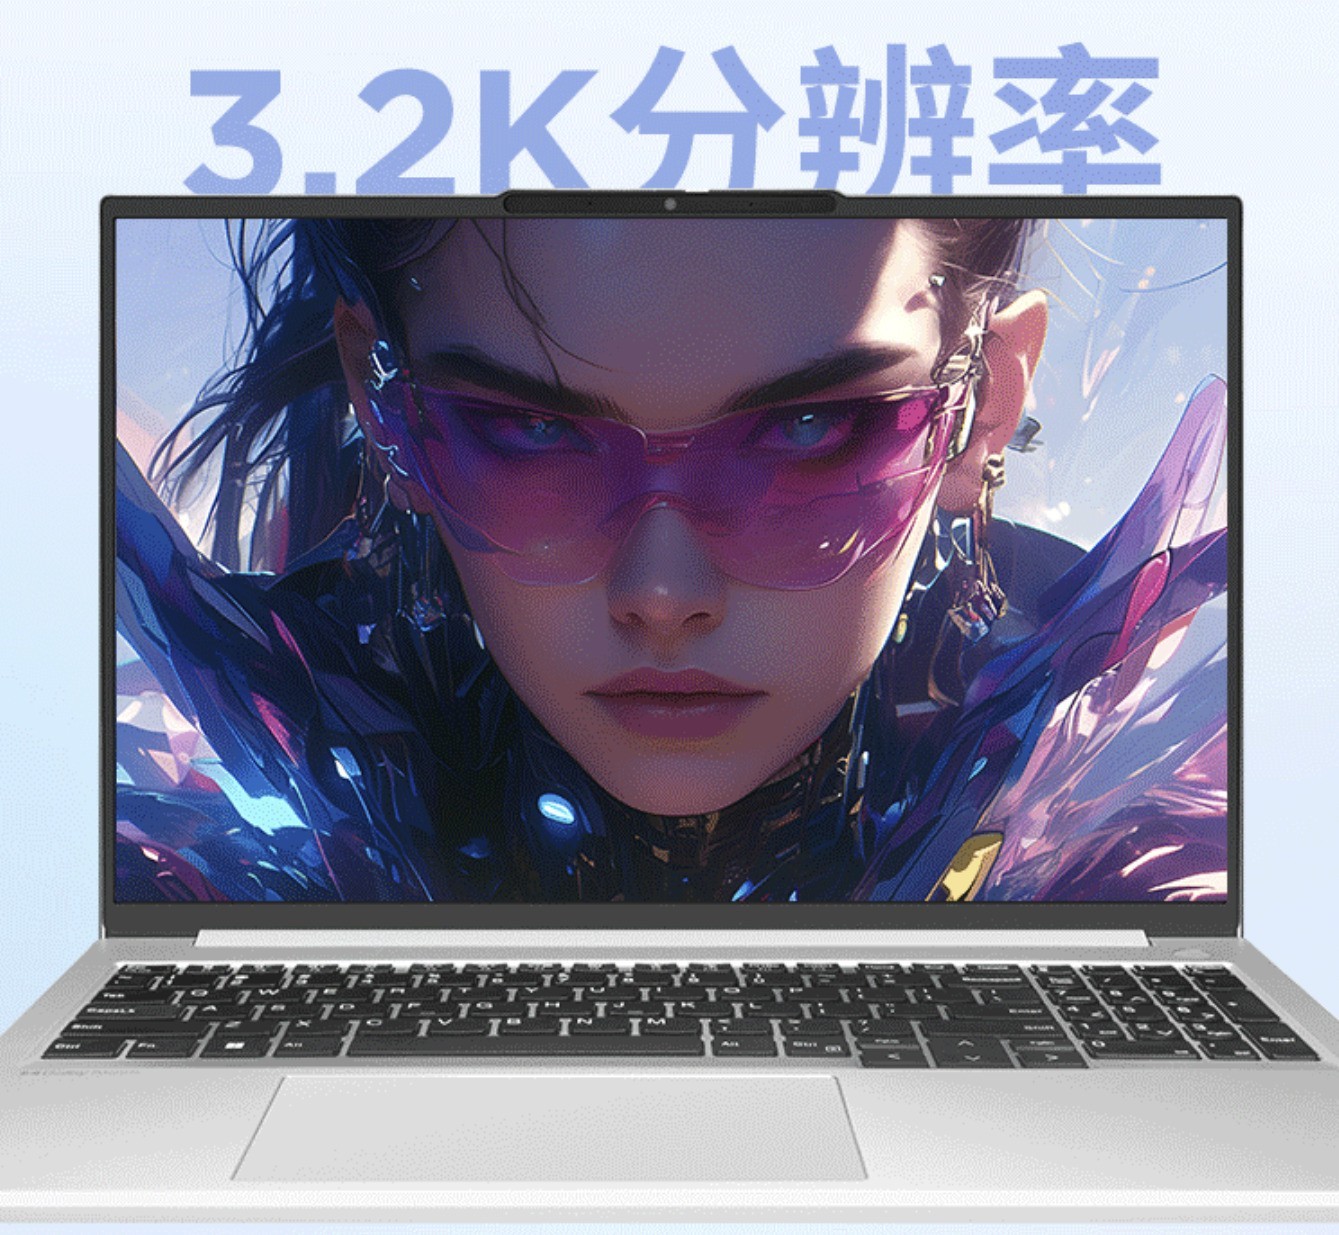 618旗舰AI PC推荐 联想笔记本电脑昭阳AI高能版值得考虑